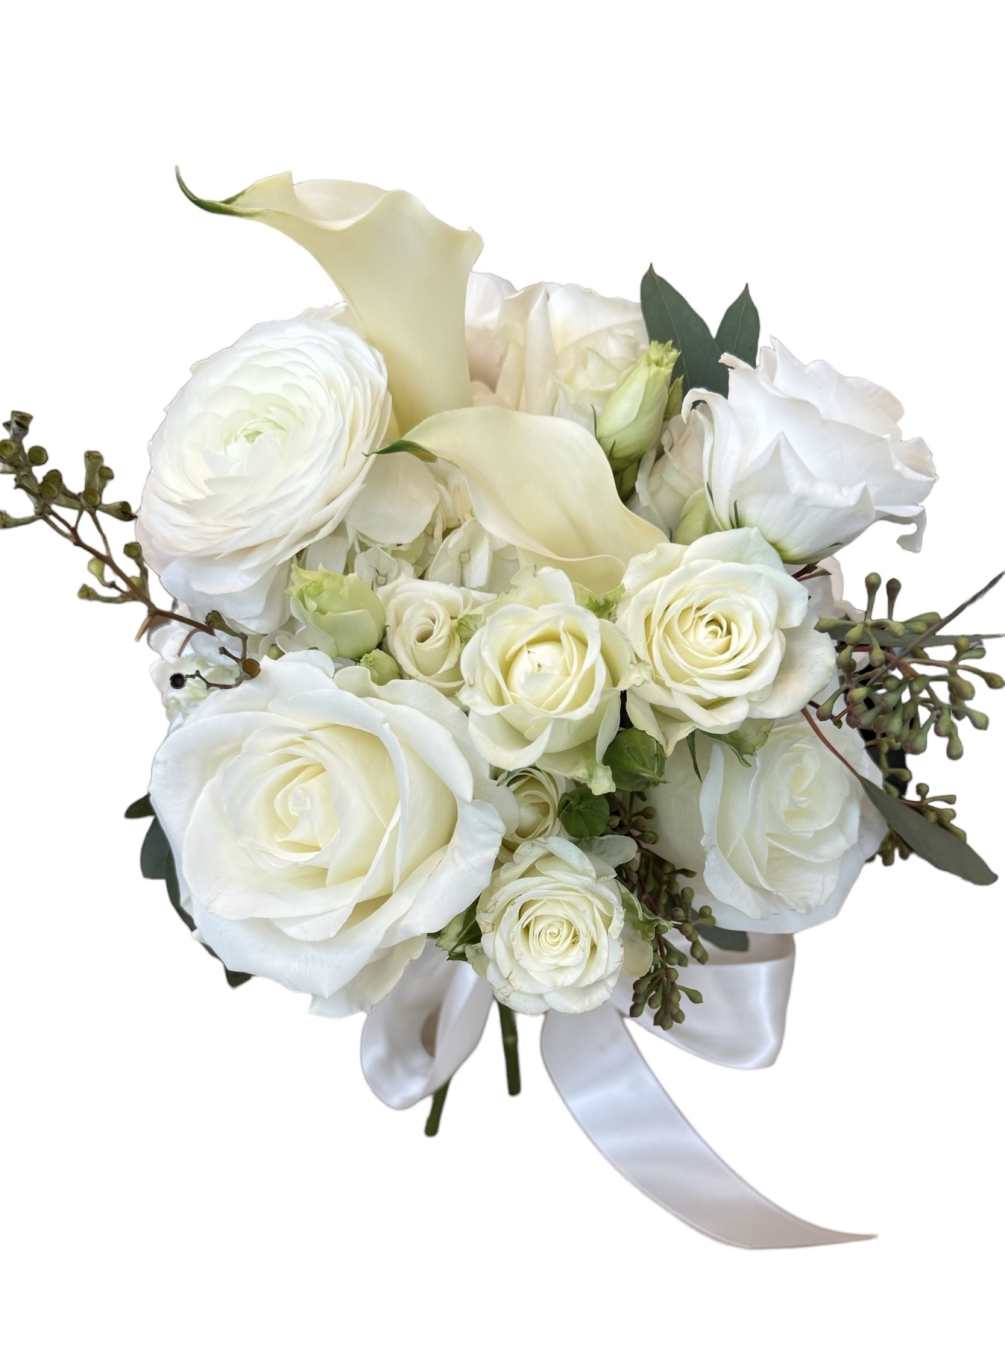 white ranunculus, white hydrangea, white rose, white calla lily, white lisianthus, white